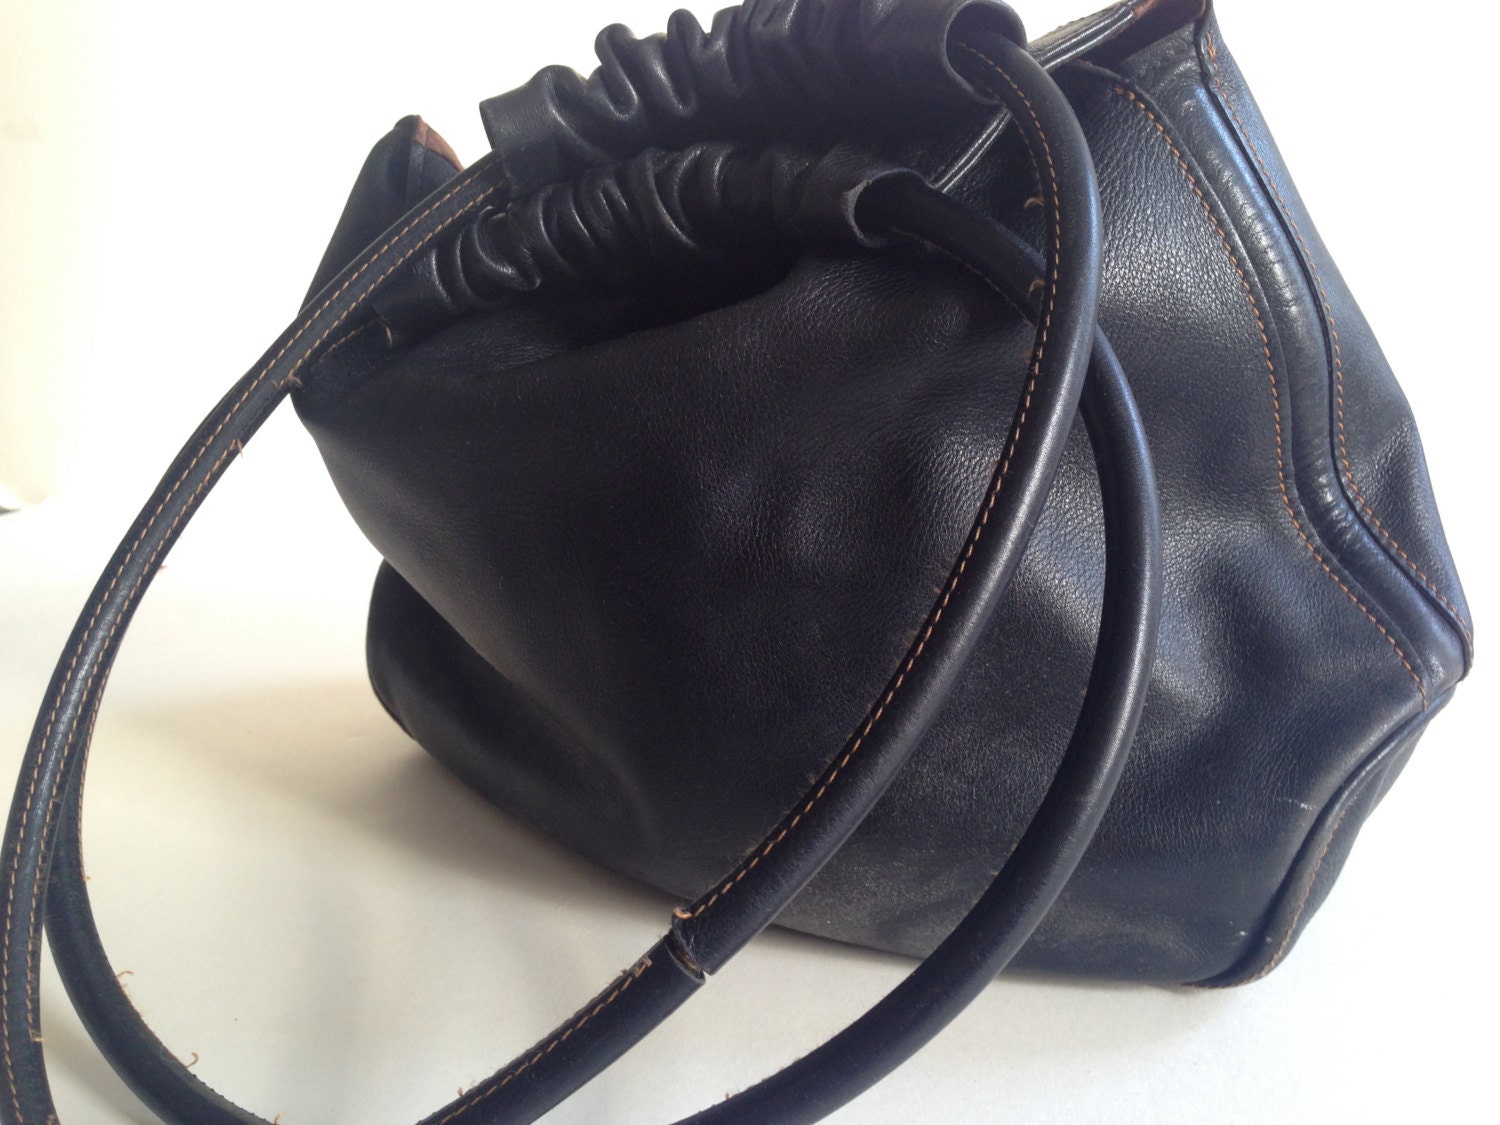 LONGCHAMP Leather Bag Black Shoulder Bag Made in France